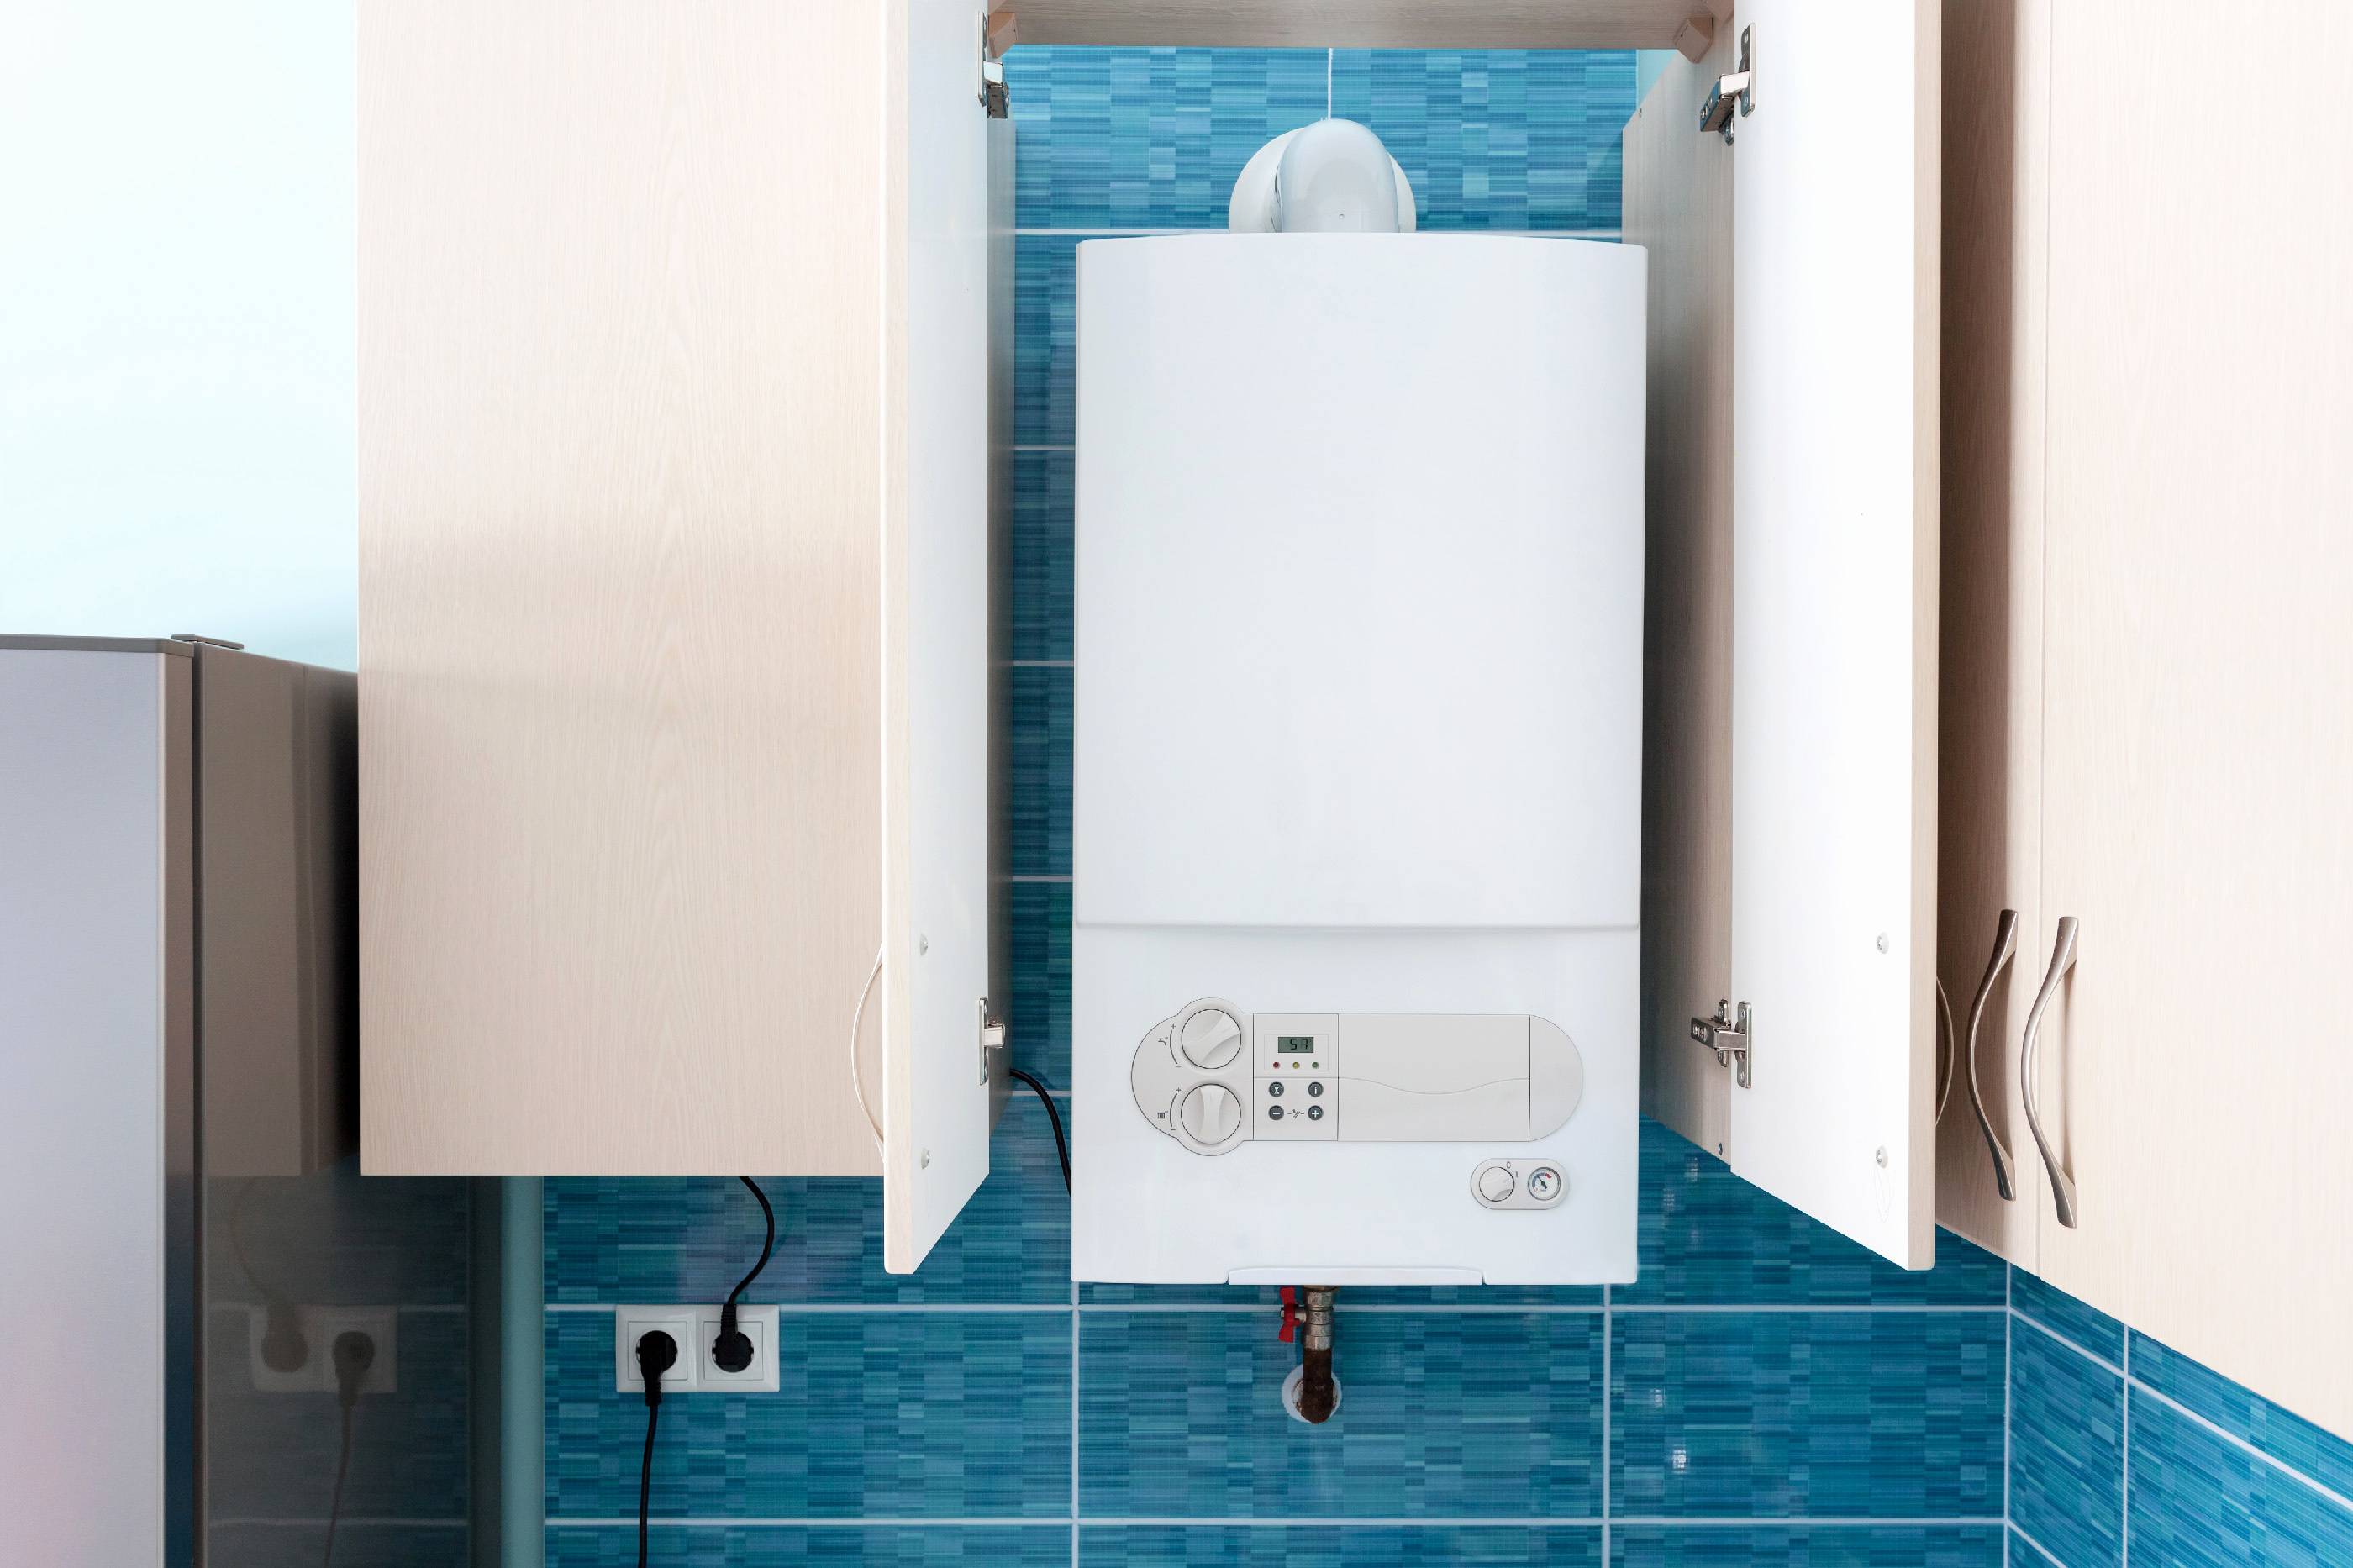 Газовый котел - колонка в ванной комнате - установка и размещение